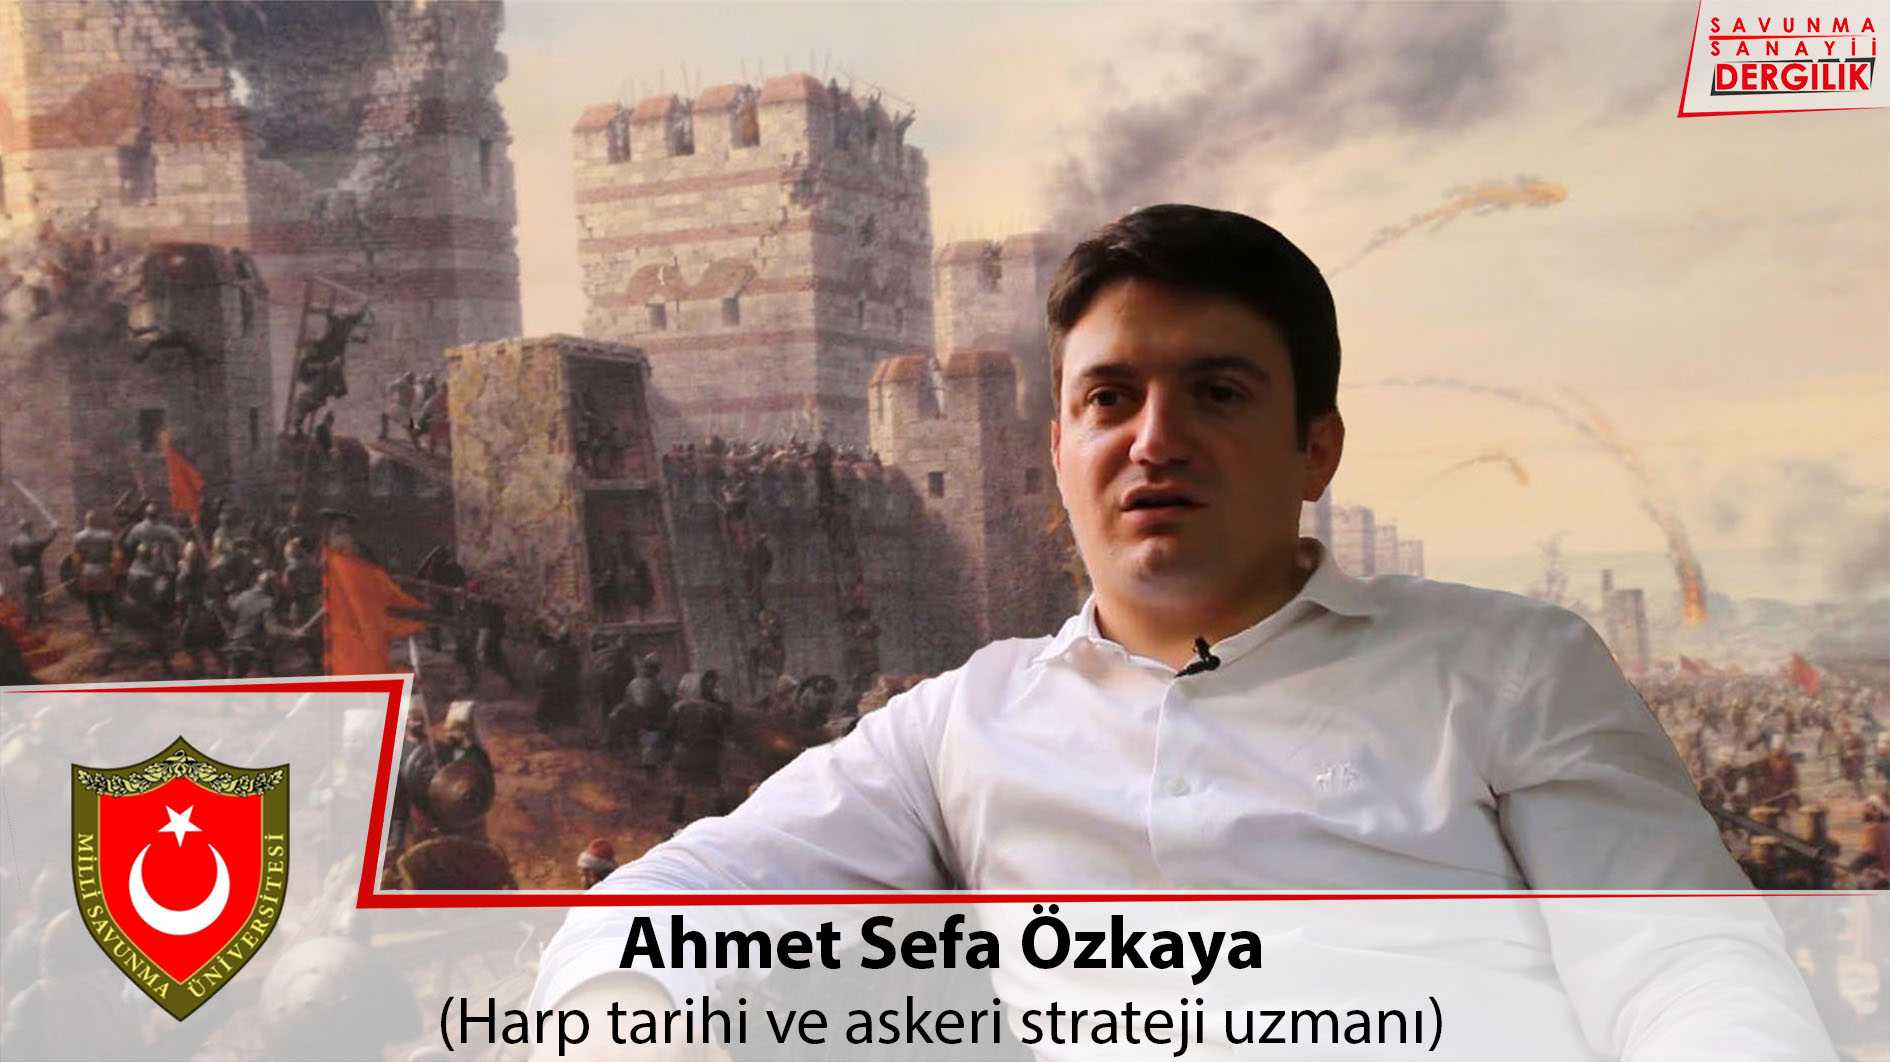 Şahi topu ve İstanbul surlarının yıkılışı (röportaj)